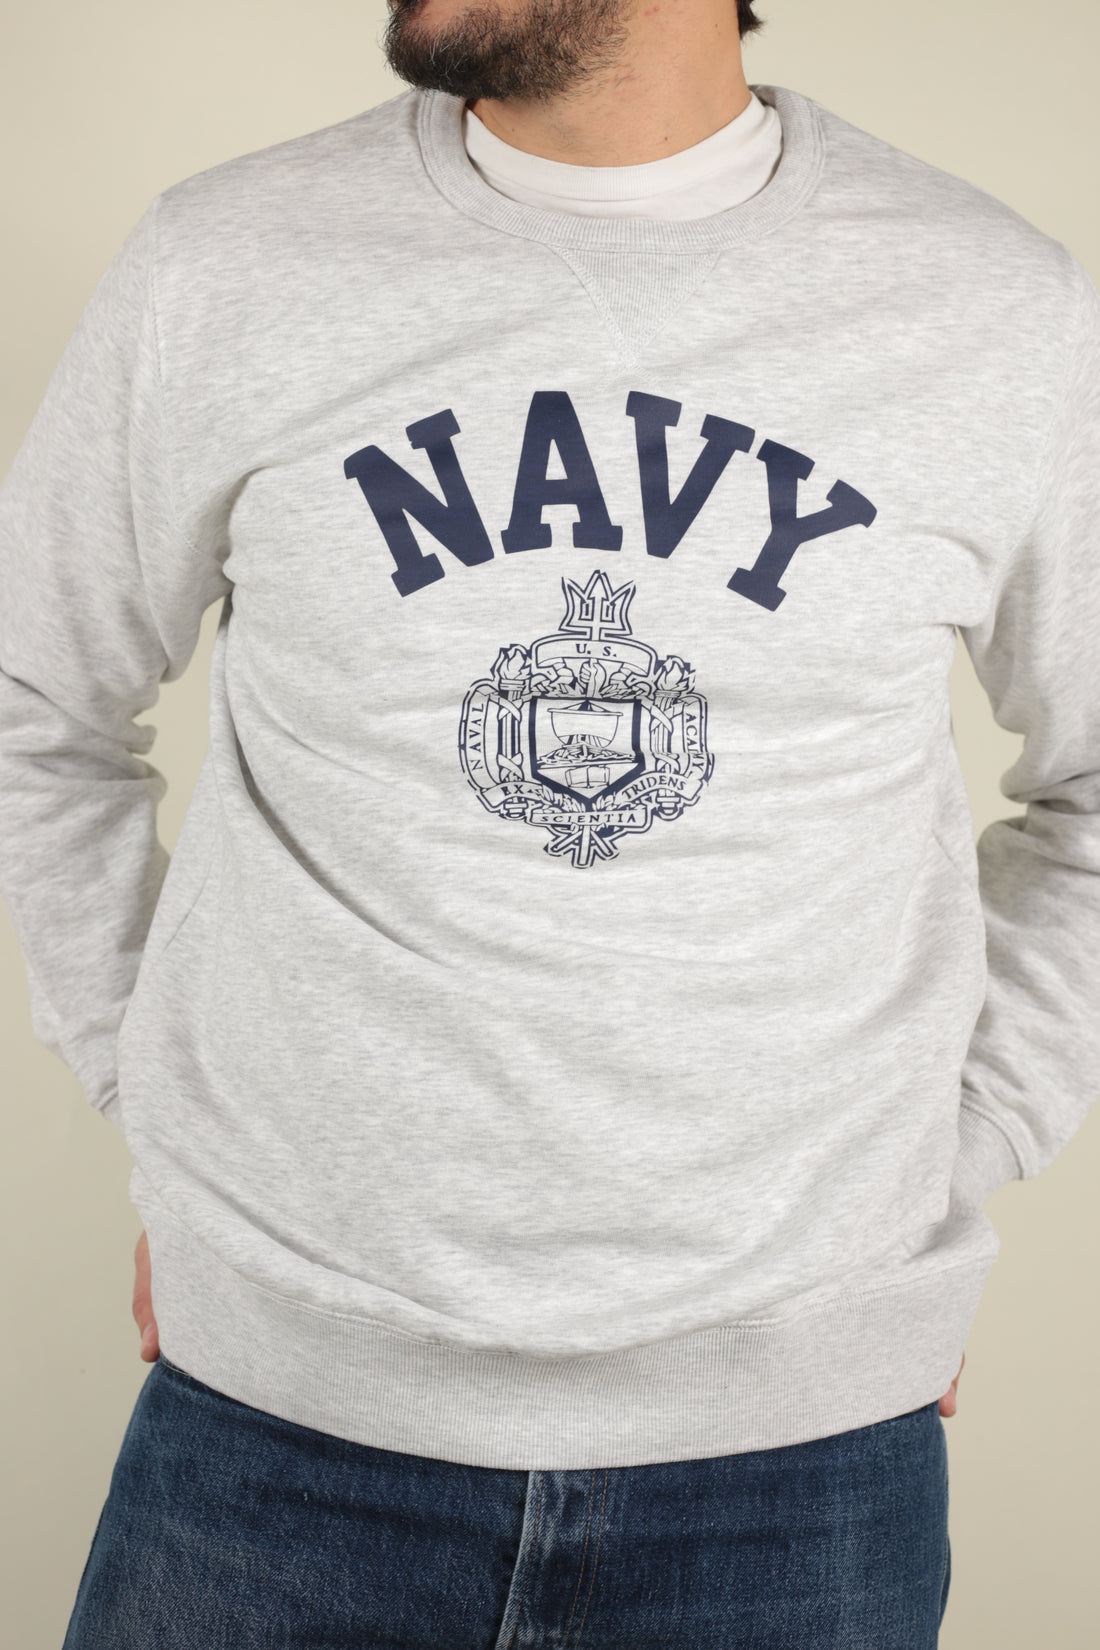 US Navy Academy Sweatshirt